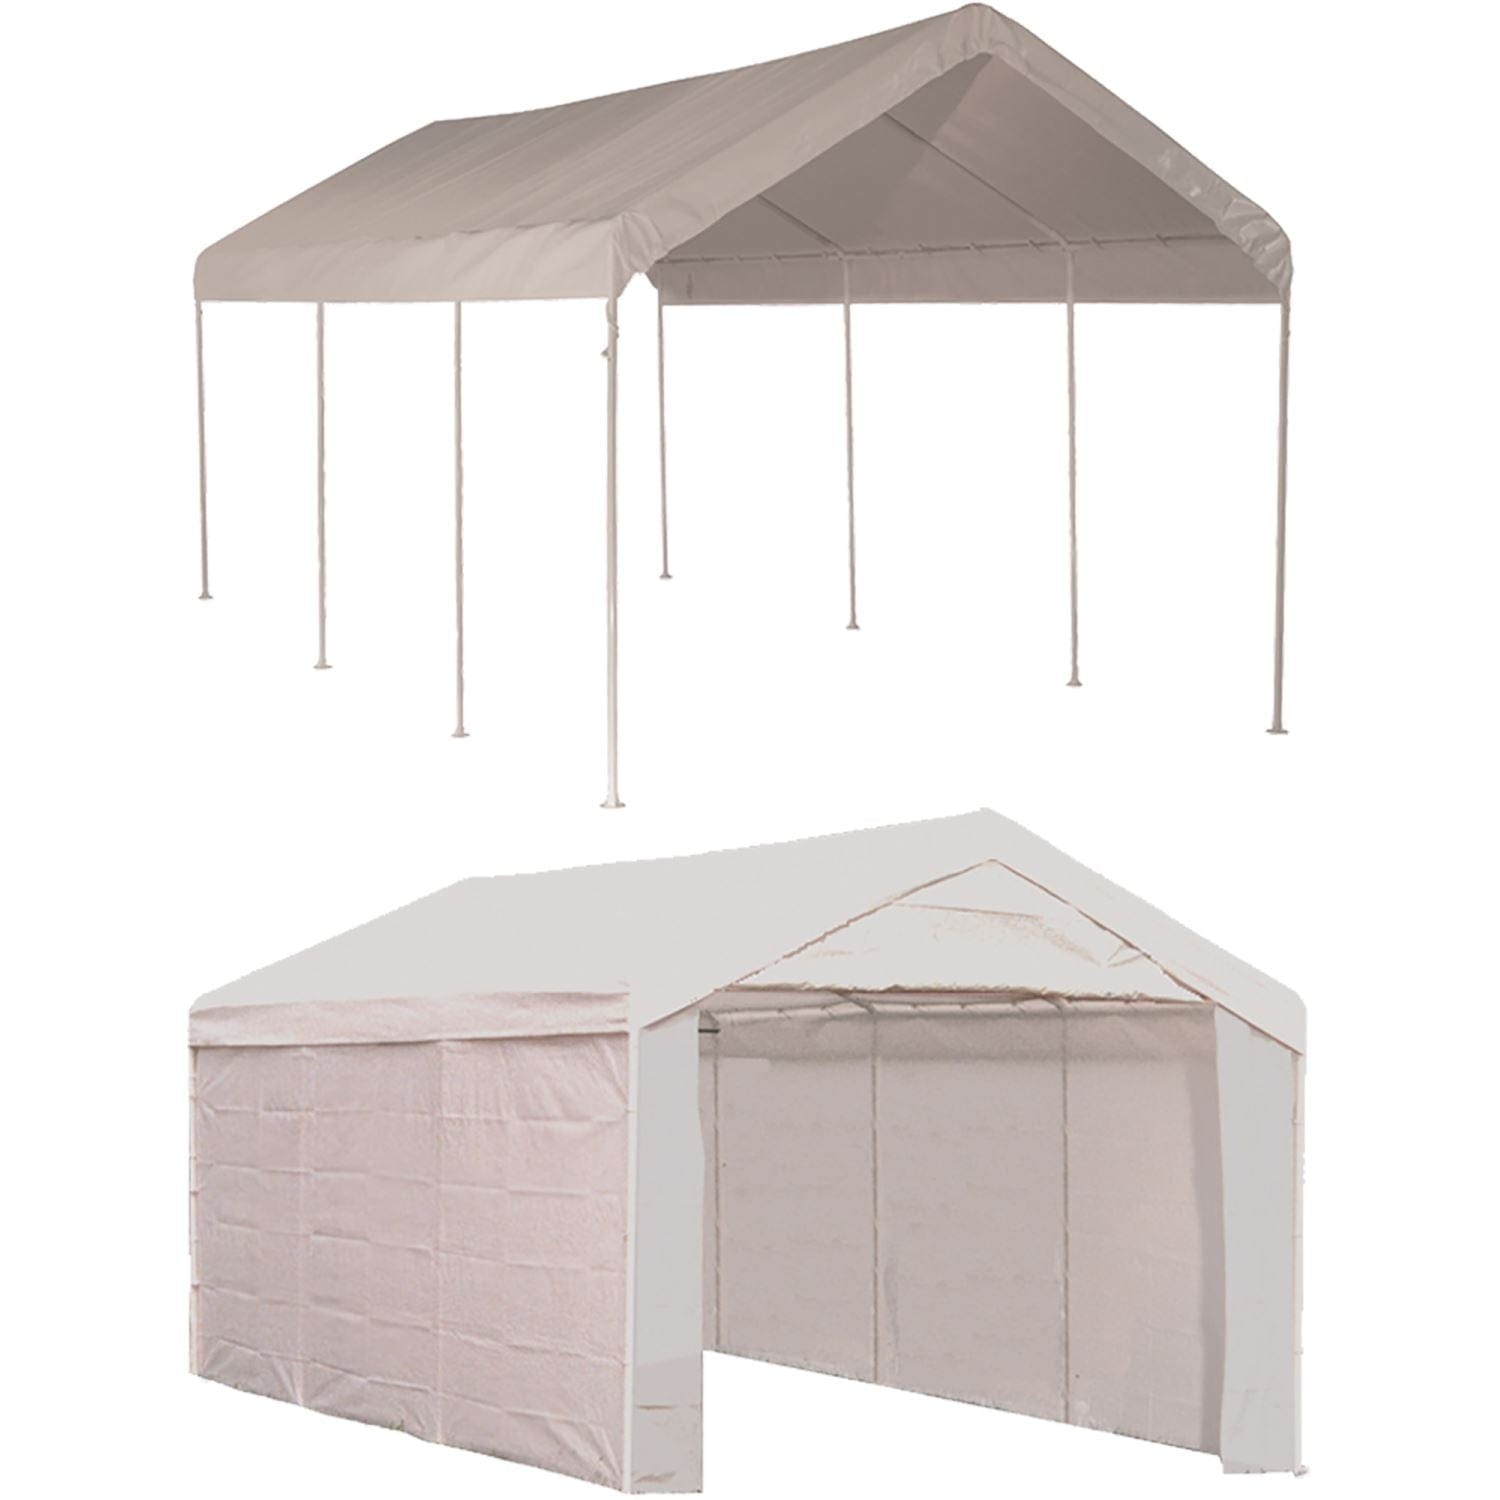 ShelterLogic Gazebo Canopy ShelterLogic | MaxAP Gazebo Canopy 2-in-1 Enclosure Kit 10 x 20 ft. 23541